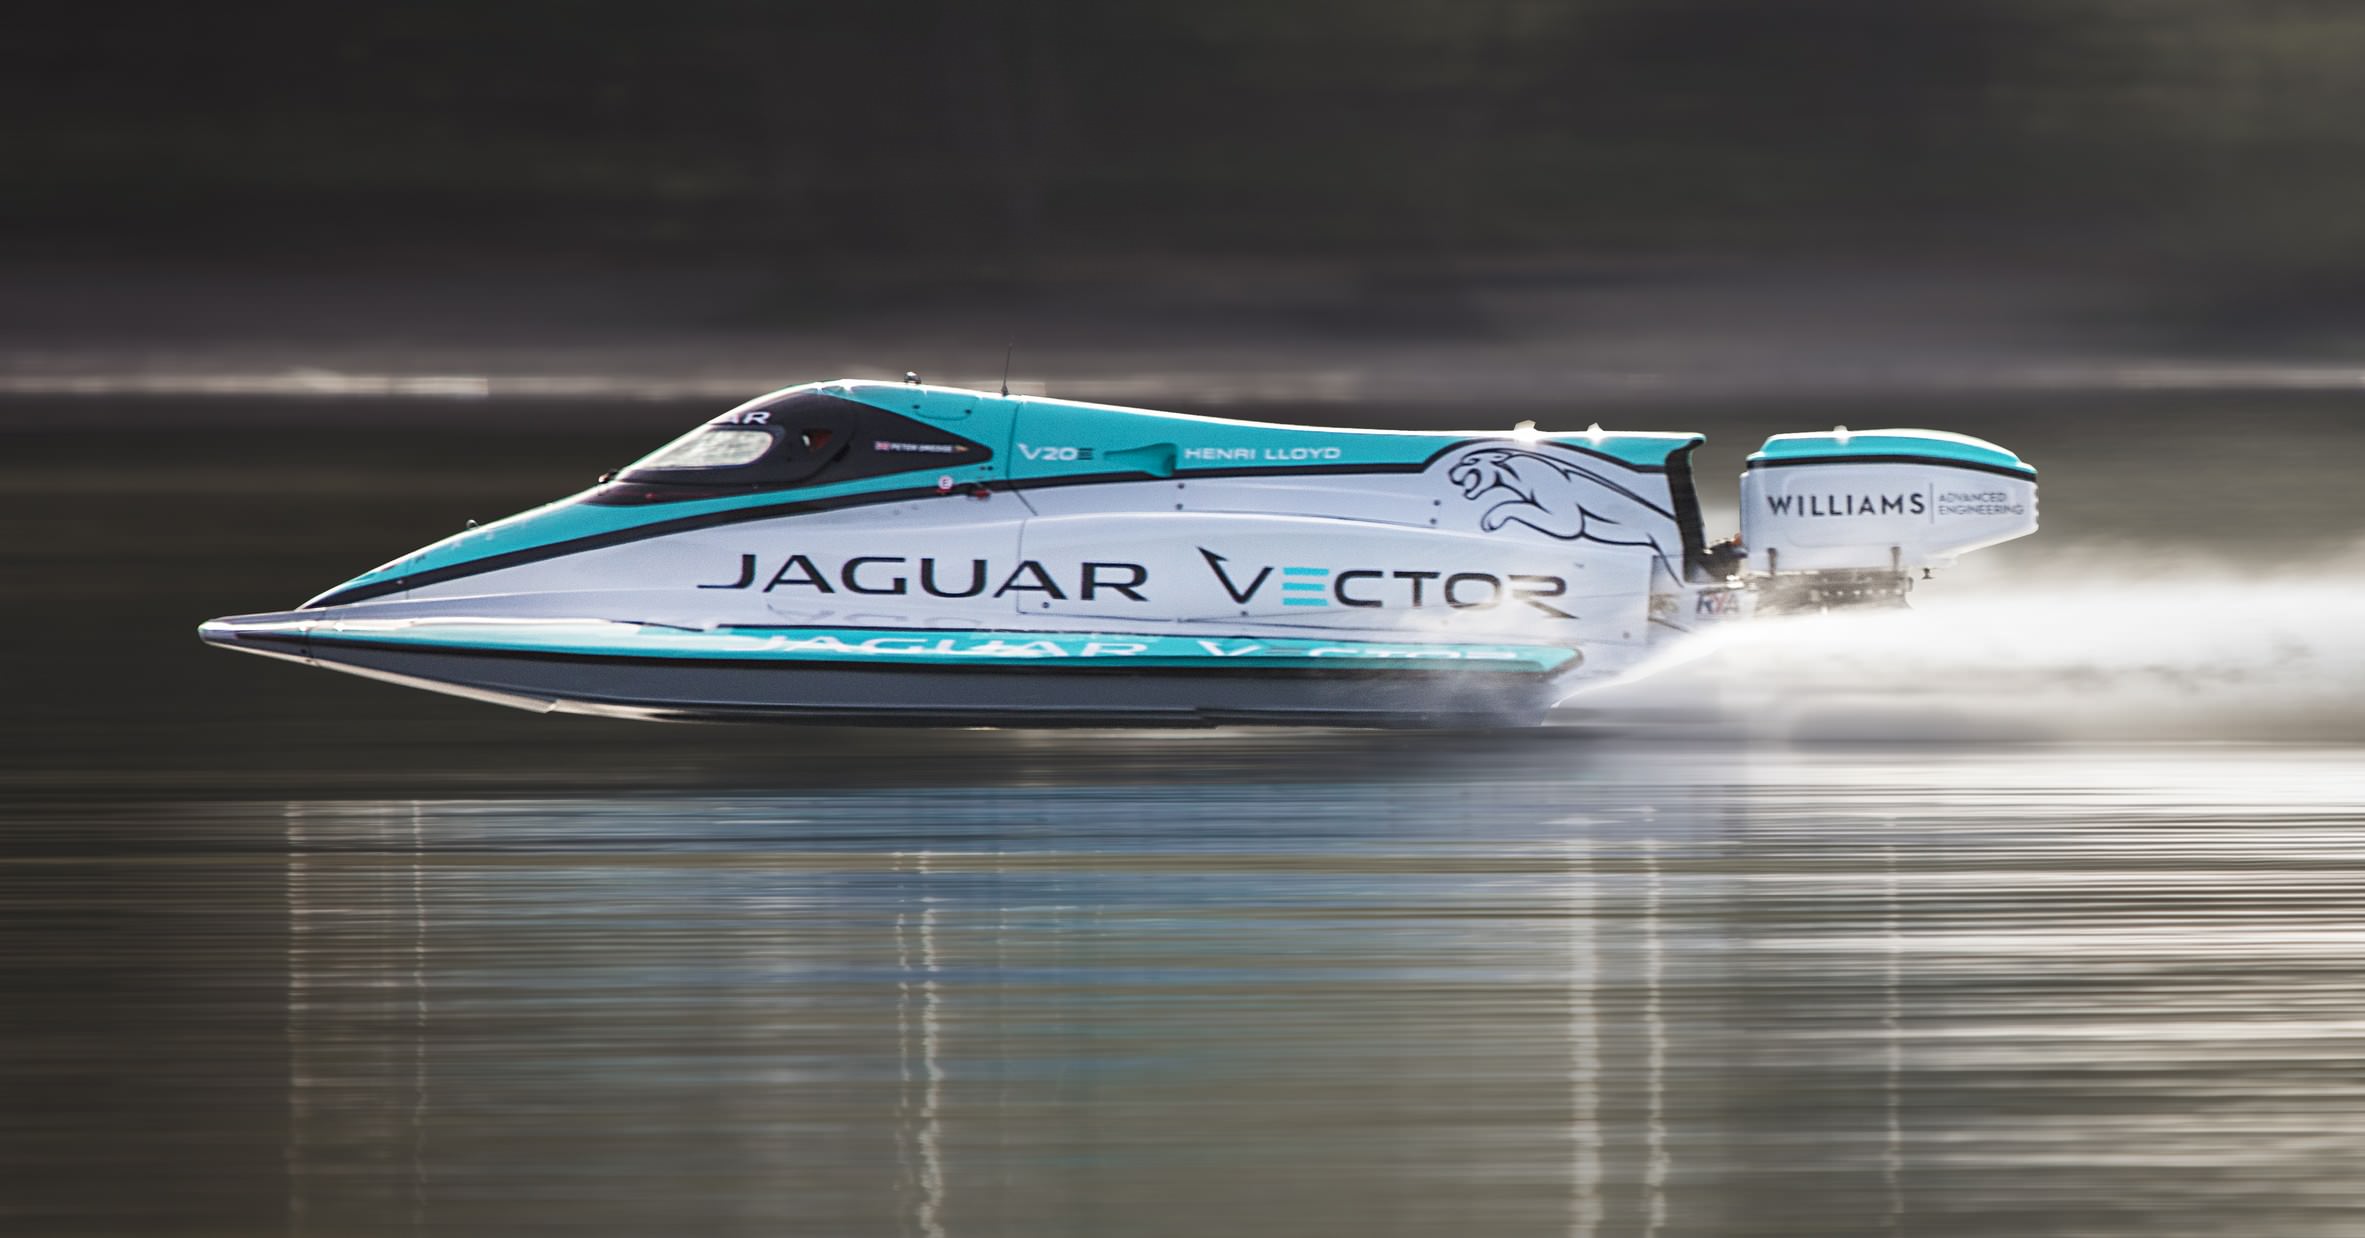 Vector Racing V20E